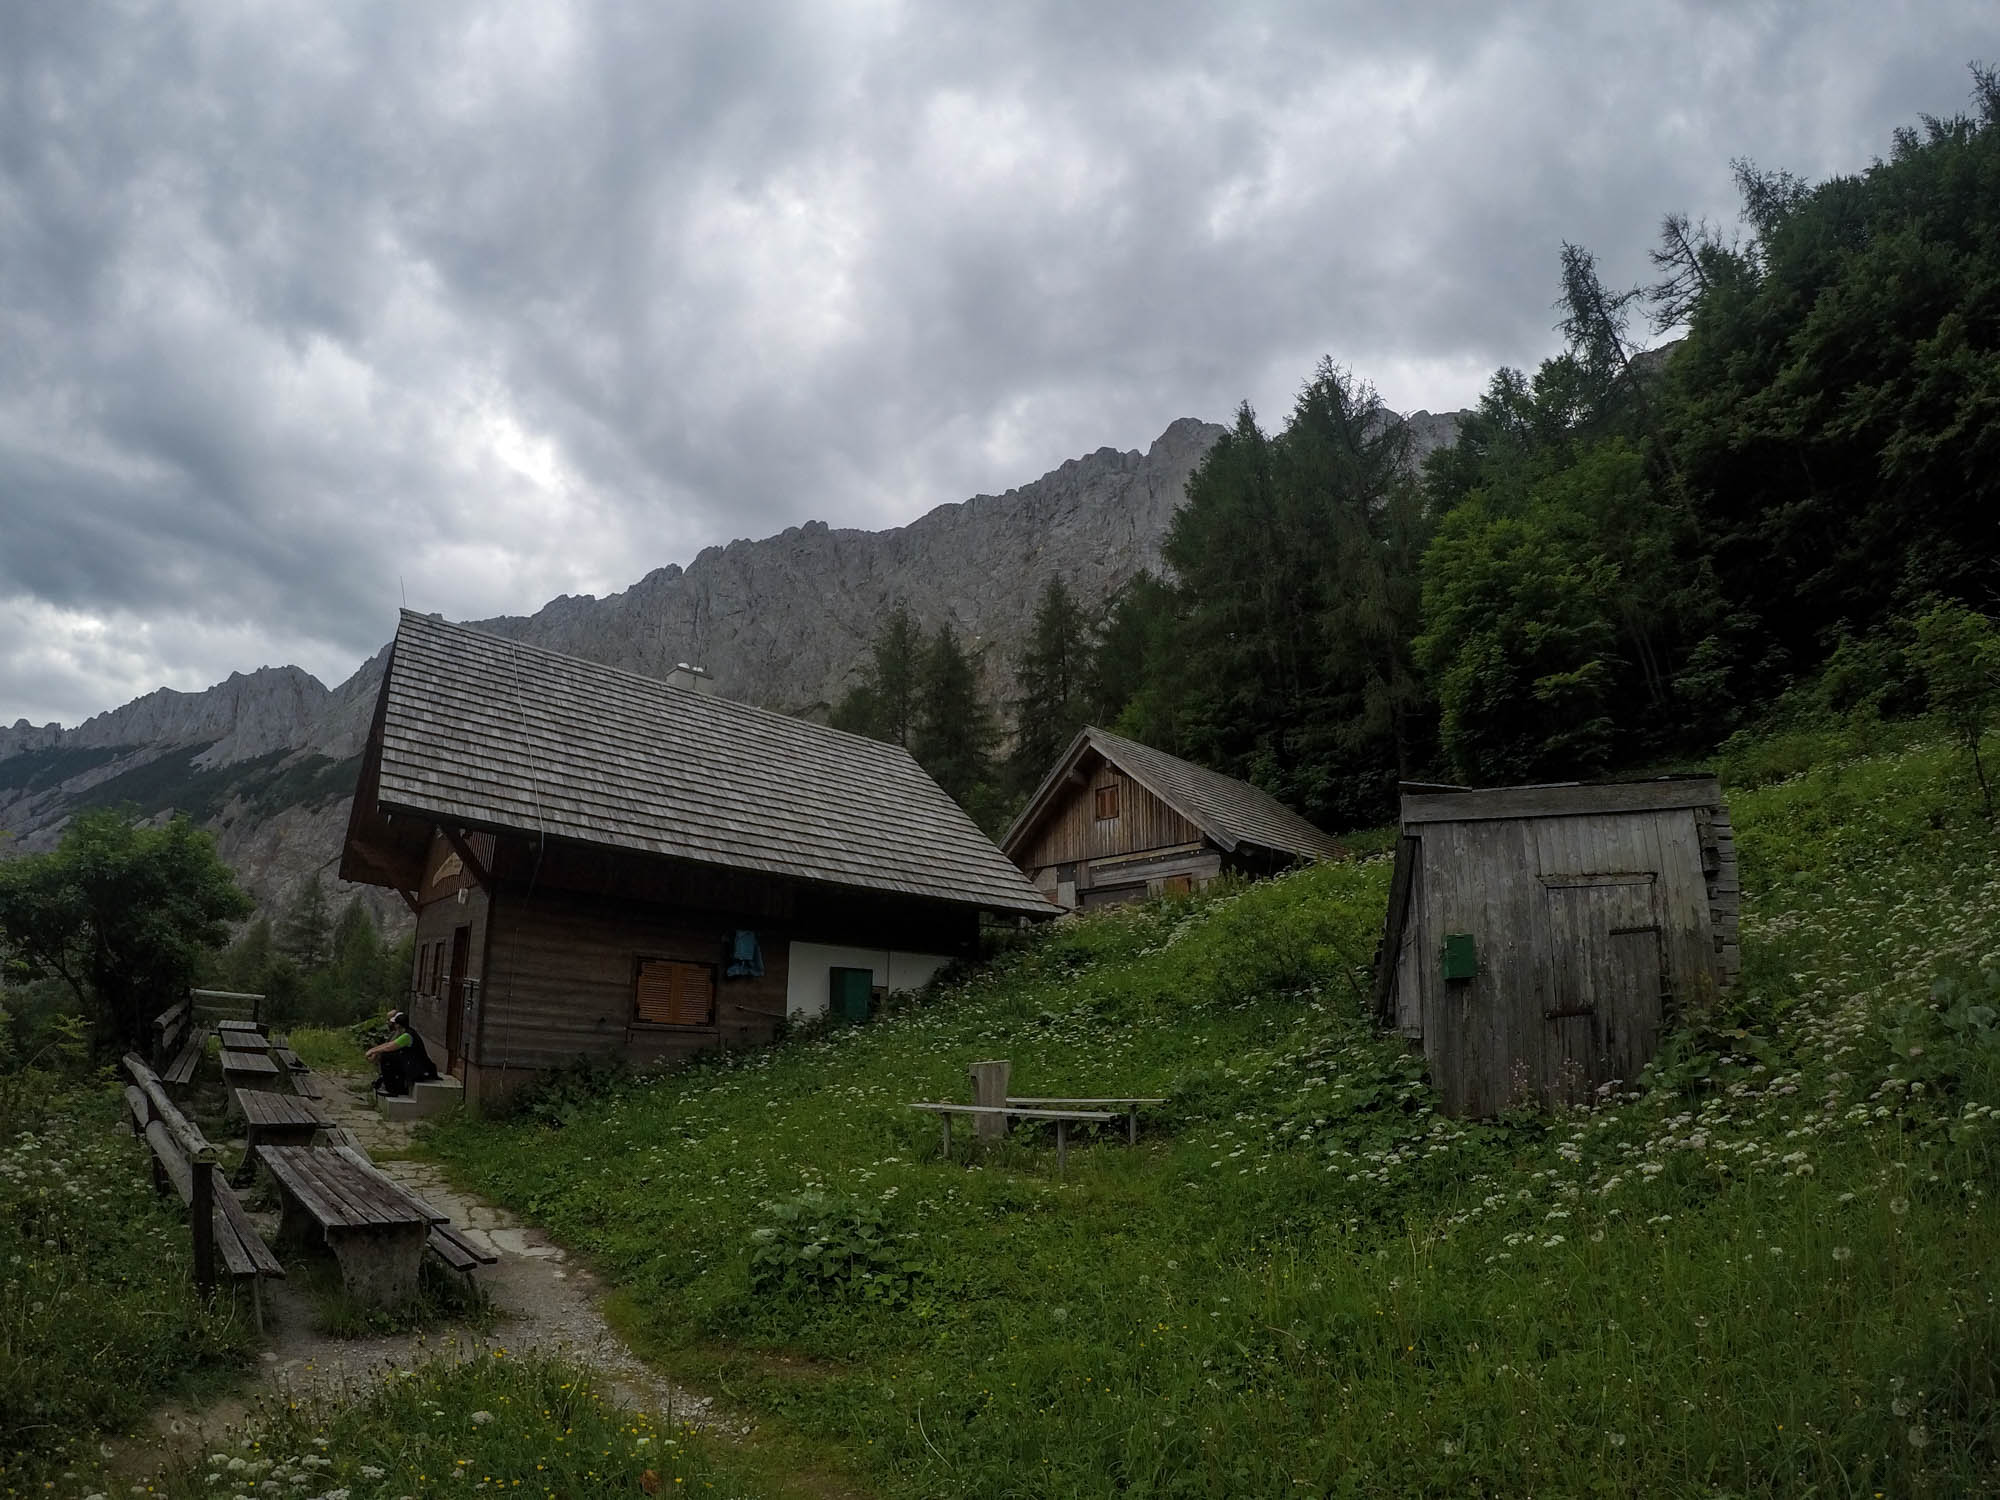 Približne po hodine cesty a prvom stúpaní lesom sa objavila chatka Florlhutte, vo výške okolo 1300 m.